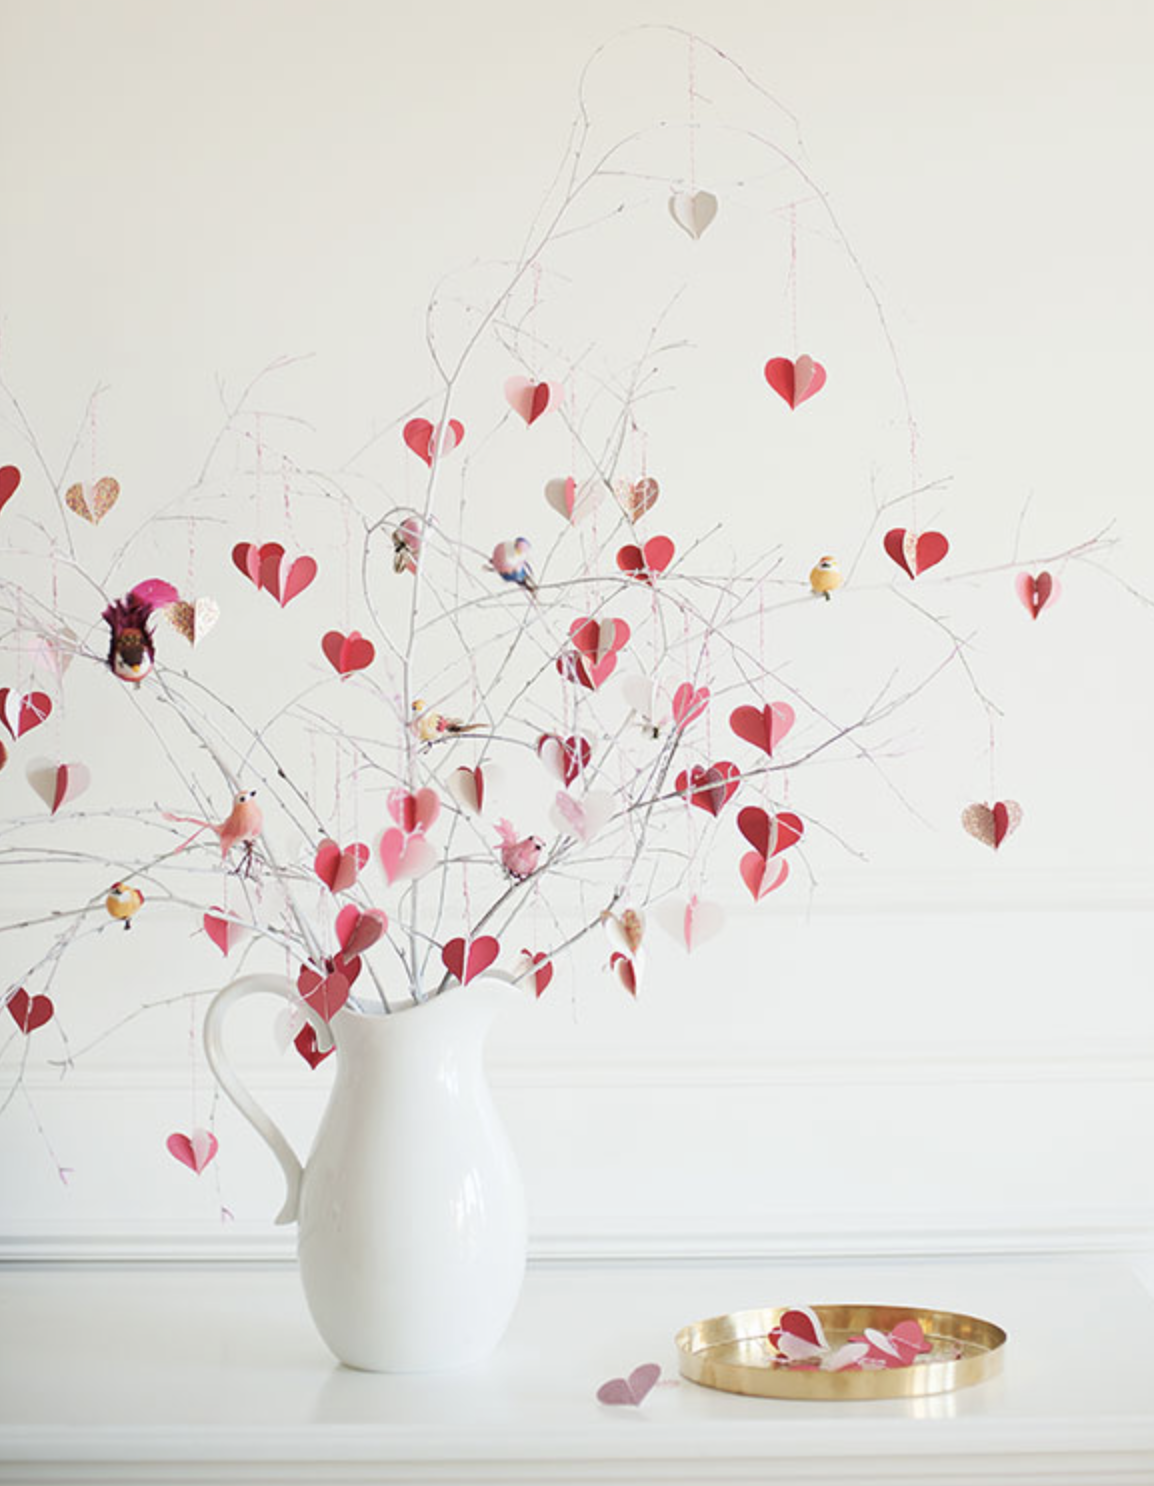 Valentine's Day Mini Tree, Projects